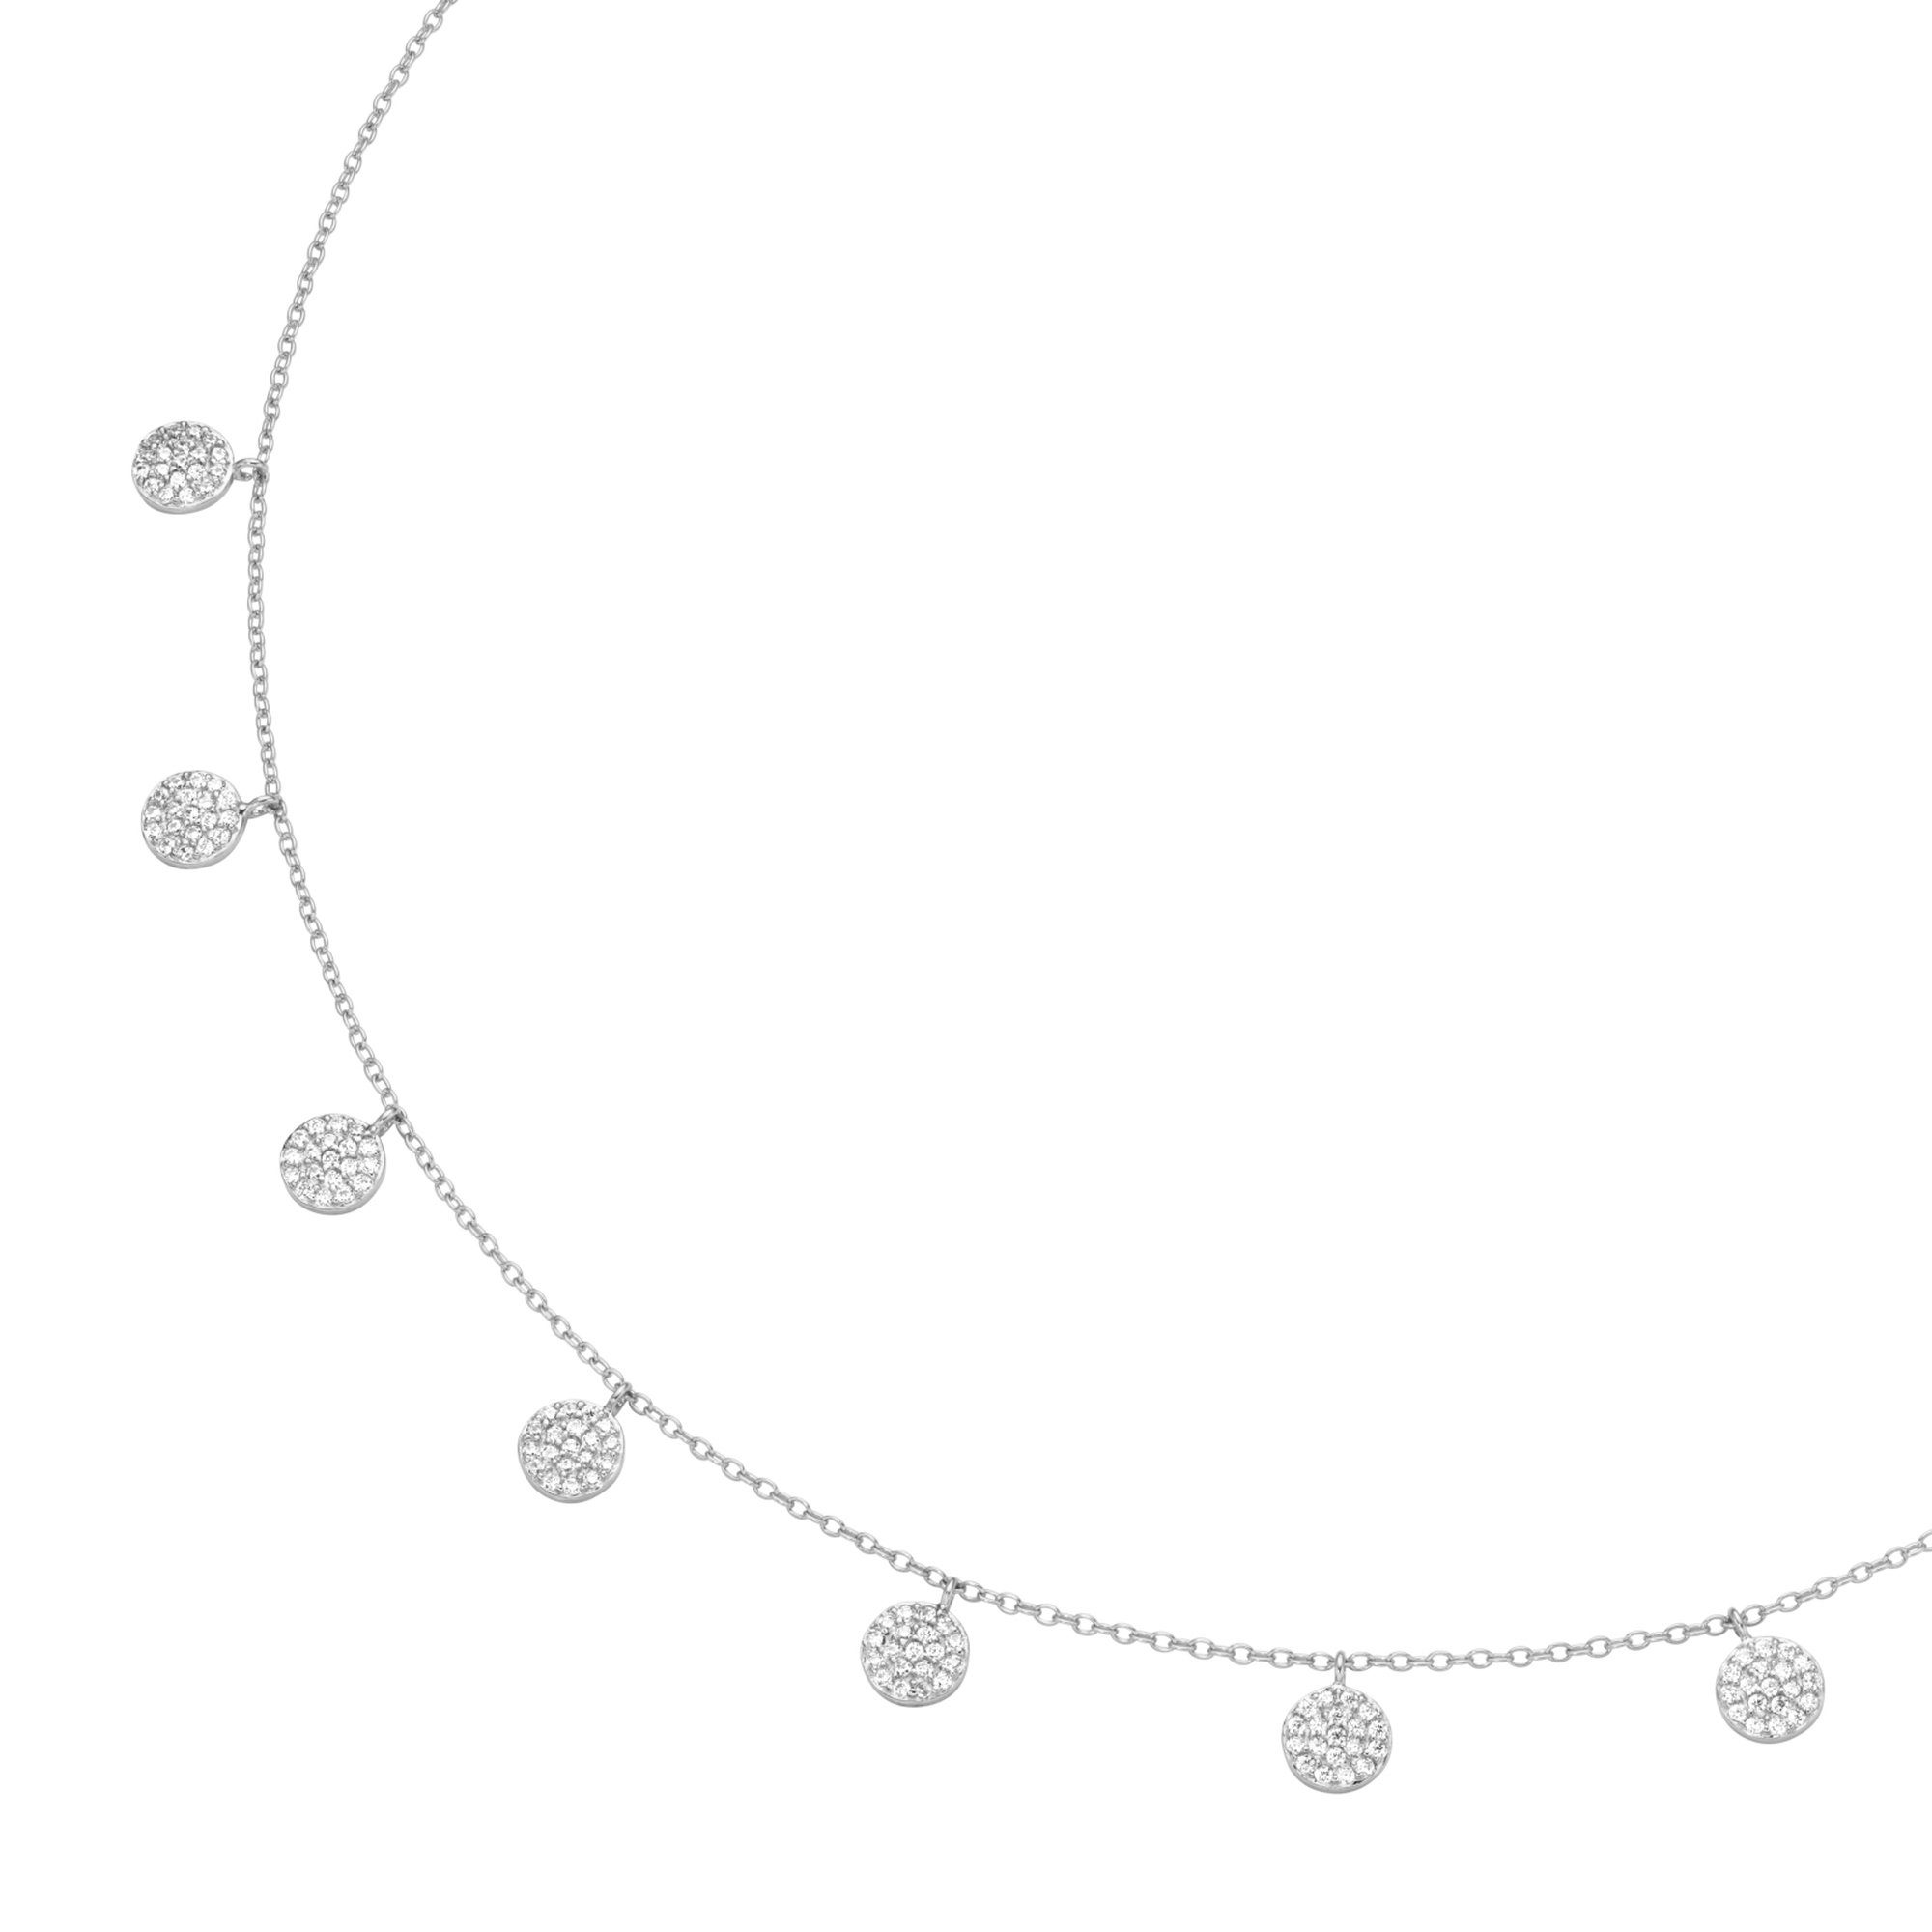 Smart Jewel Collier Plättchen mit Zirkonia Steinen, Silber 925